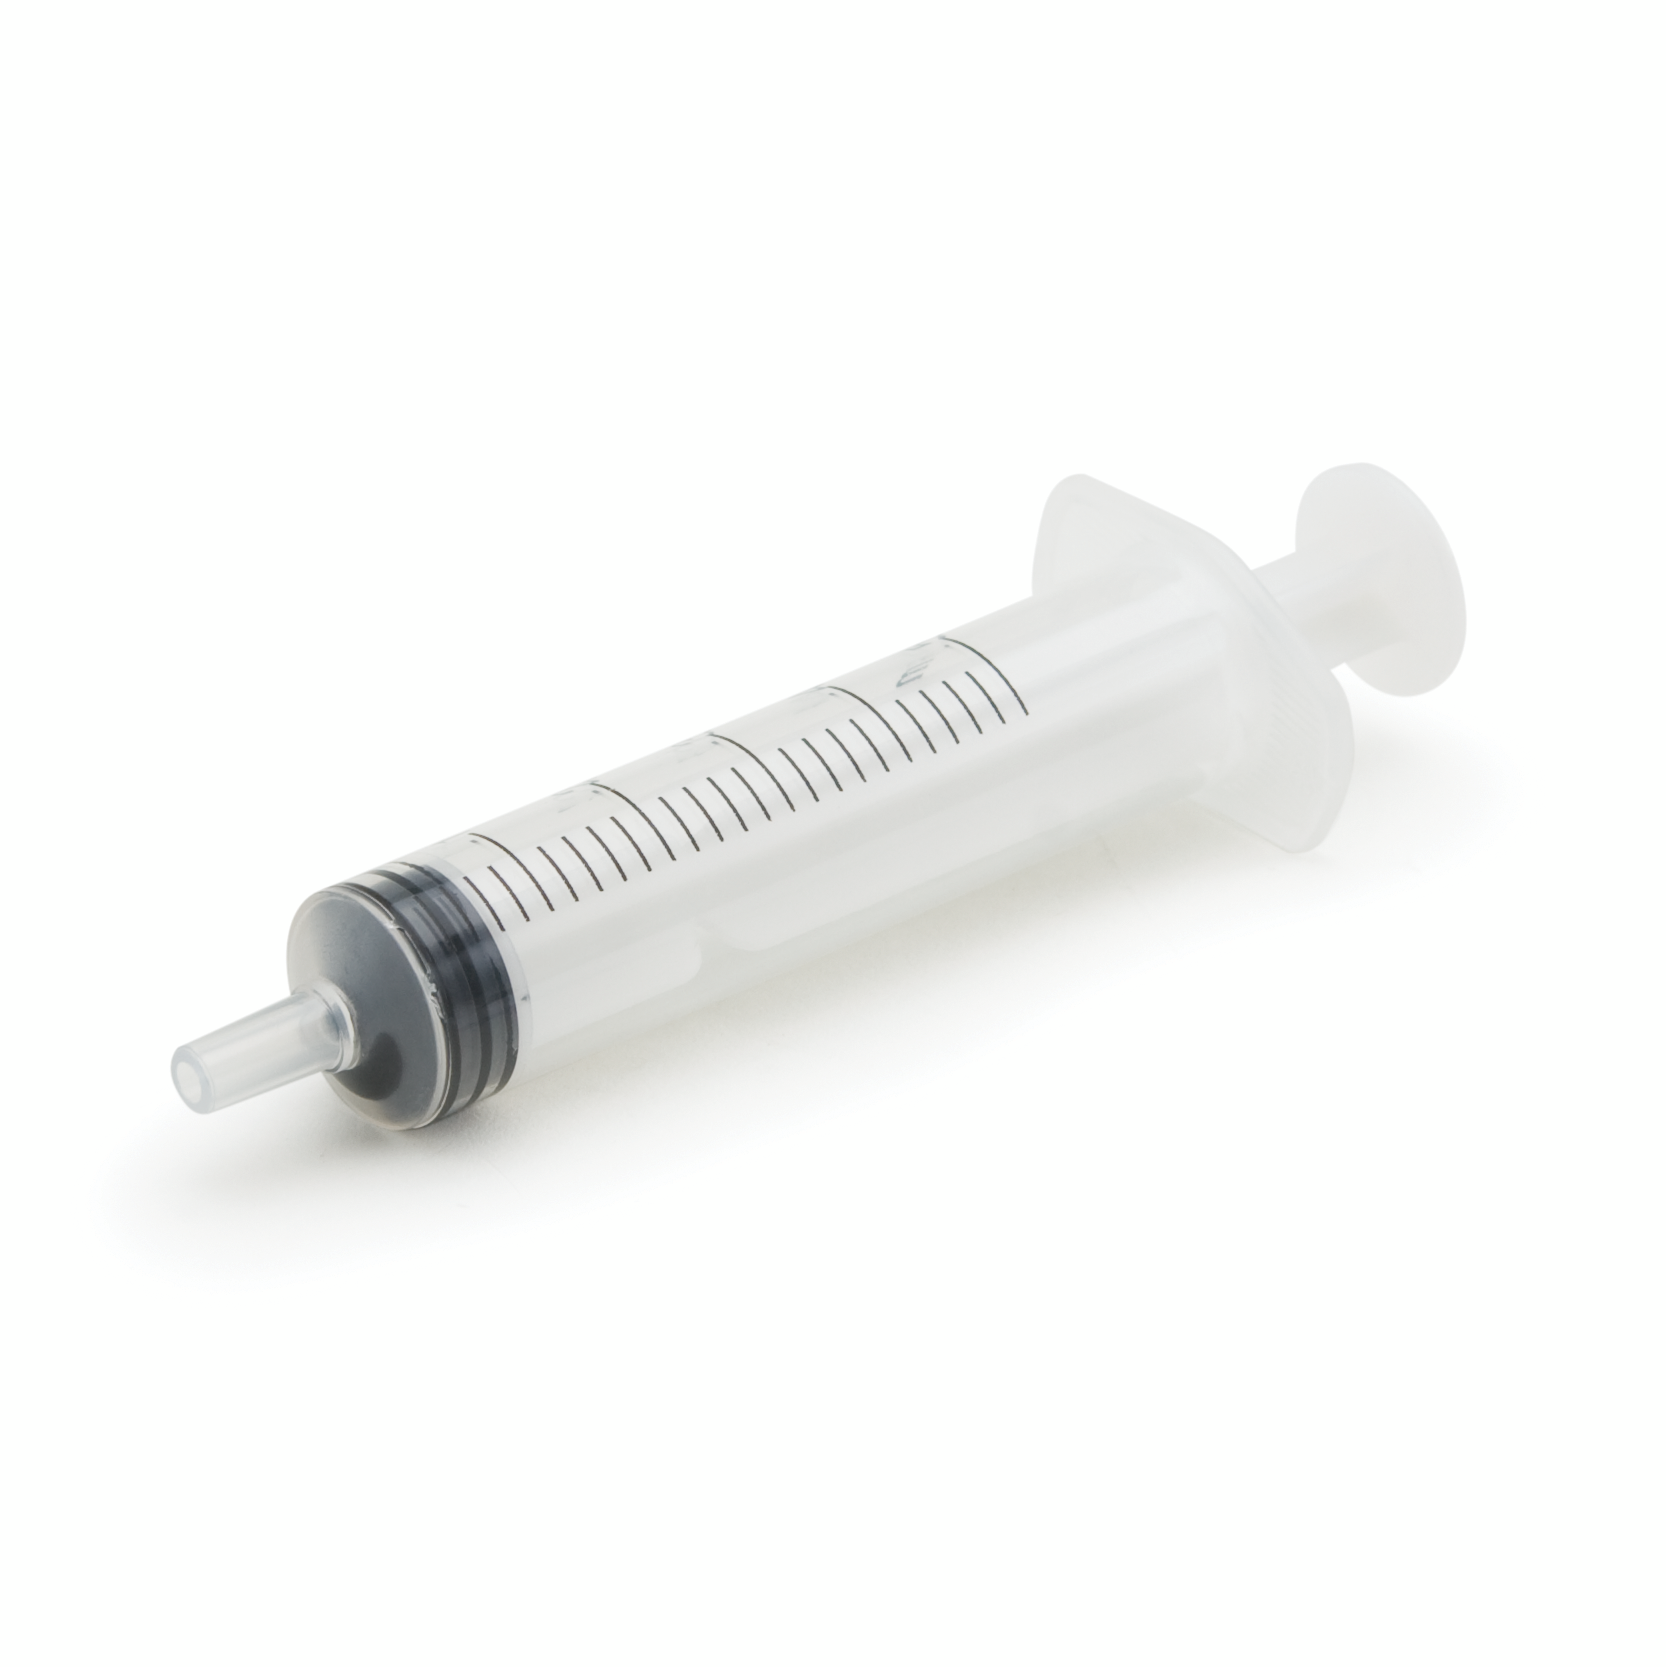 [:lt]HI740226 - 5 ml graduotas švirkštas[:en]HI740226 - 5 ml Graduated Syringe[:]